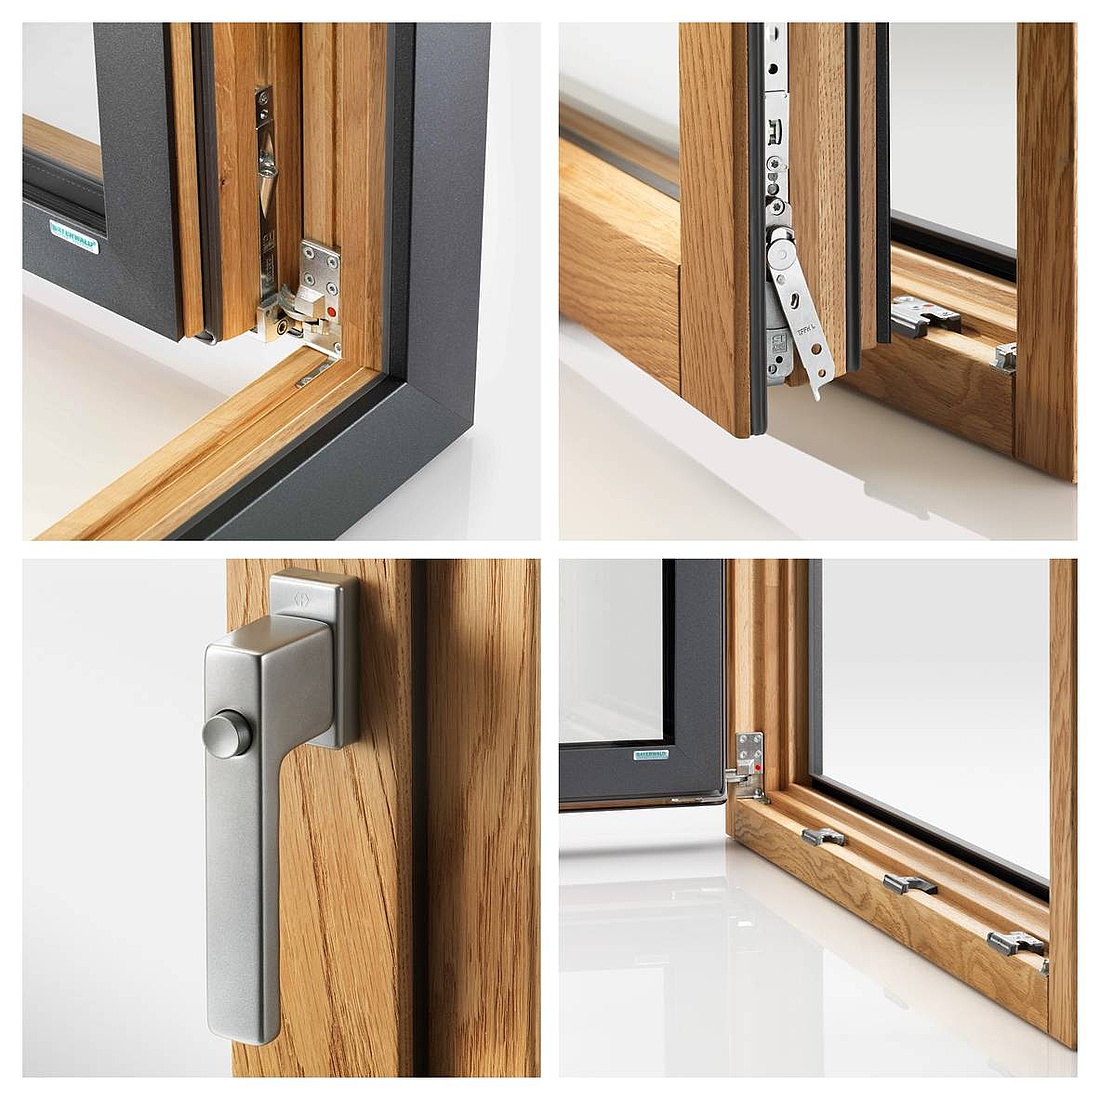 Bayerwald Holz/Alu-Fenster mit serienmäßig eingebauter RC1 Beschlagsausstattung bieten erhöhten Schutz vor Fenstereinbrüchen. (Fotos: Bayerwald - Fenster Haustüren GmbH)